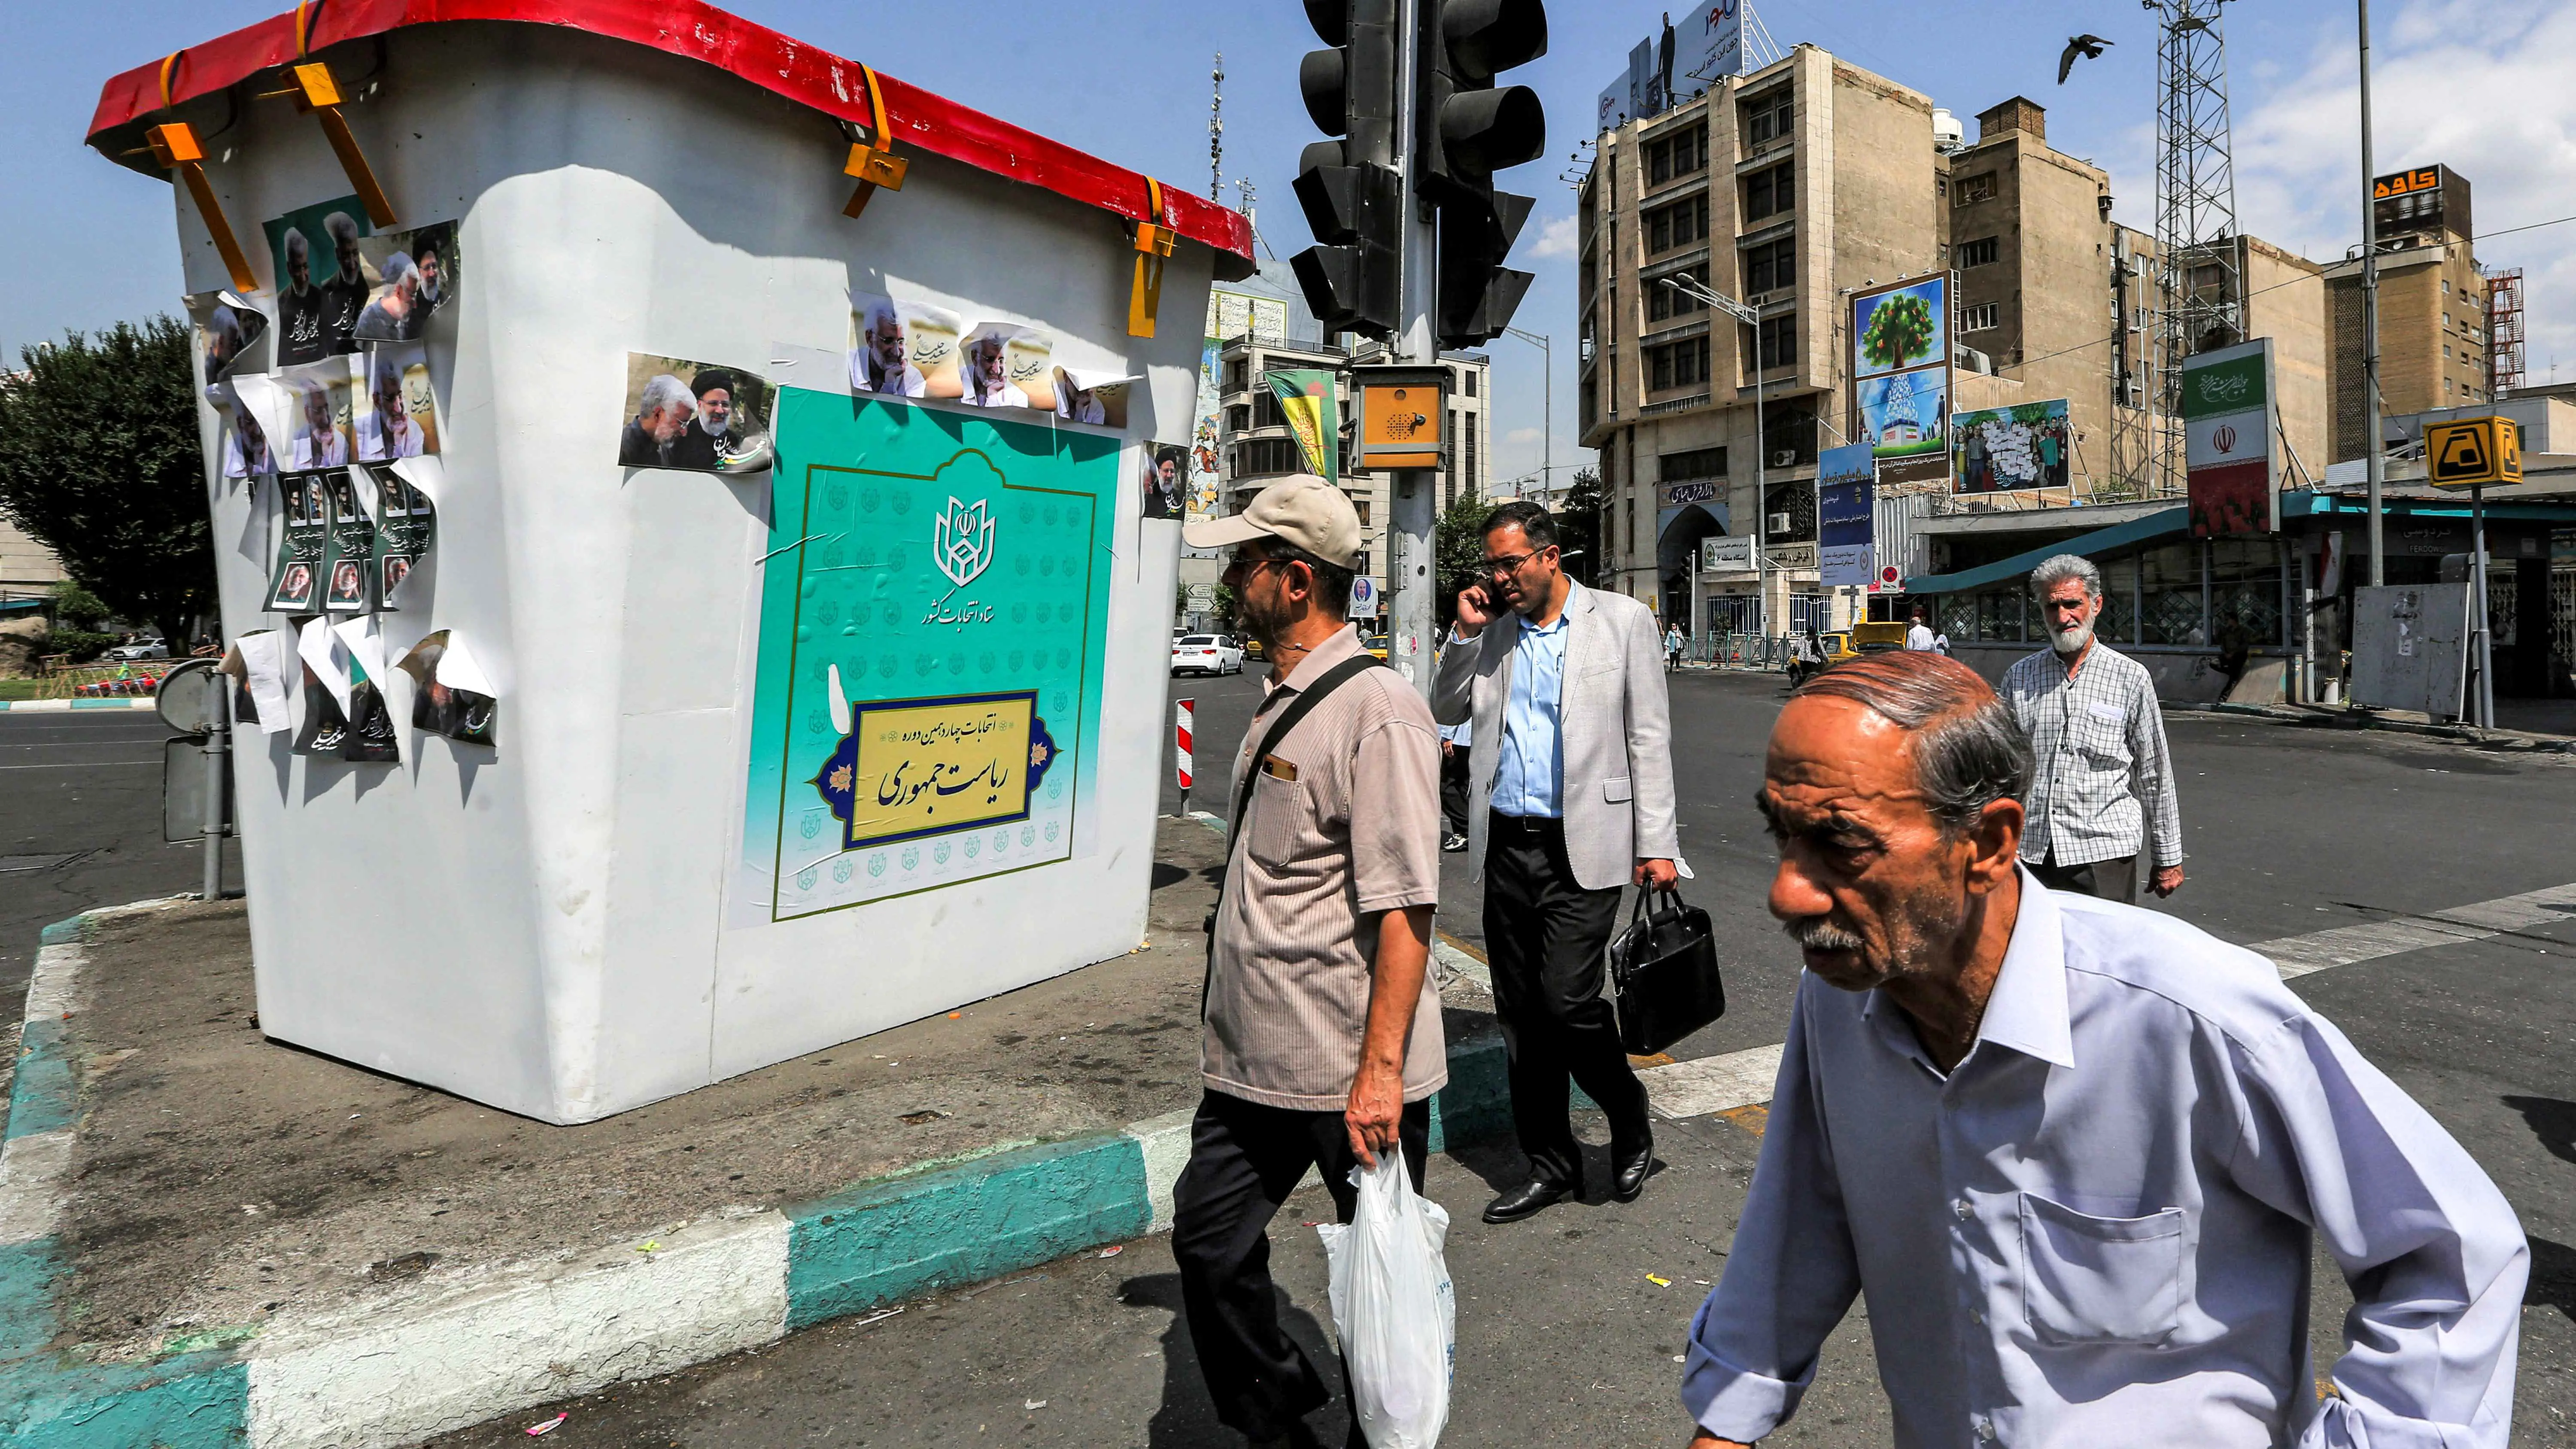 نيويورك تايمز: "الاقتصاد المريض" يتصدر اهتمامات الناخبين الإيرانيين